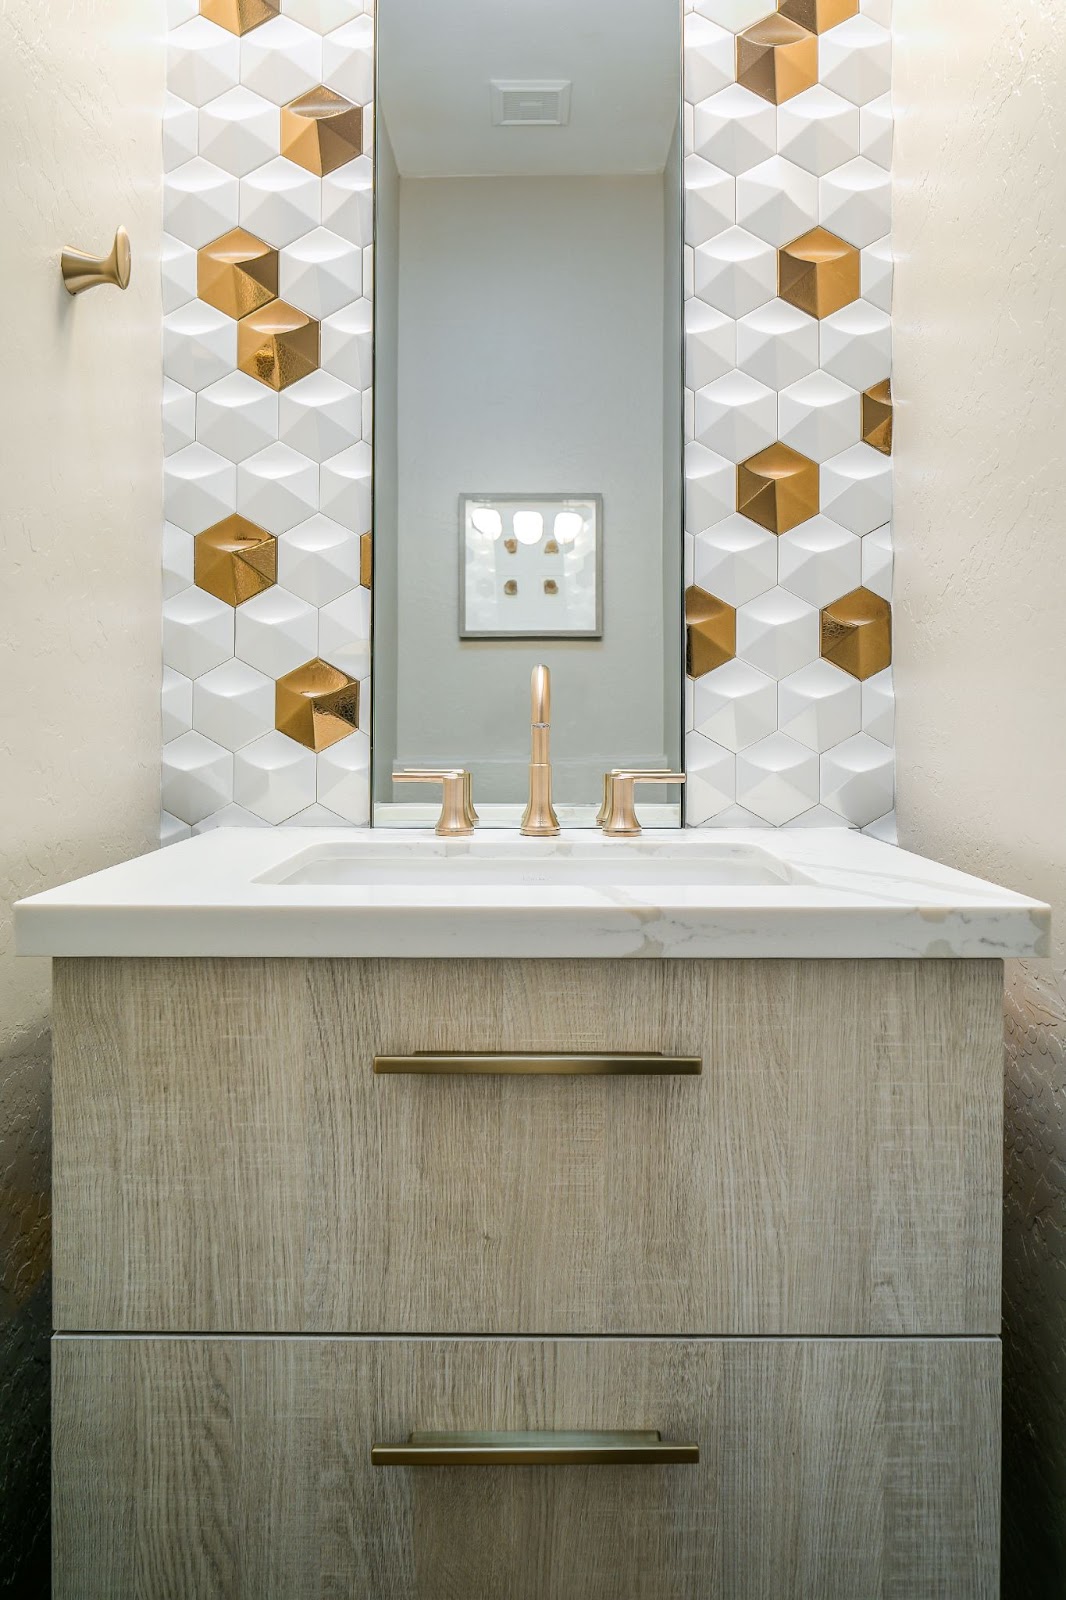 bathroom-design-element-3d-tiles-around-vanity